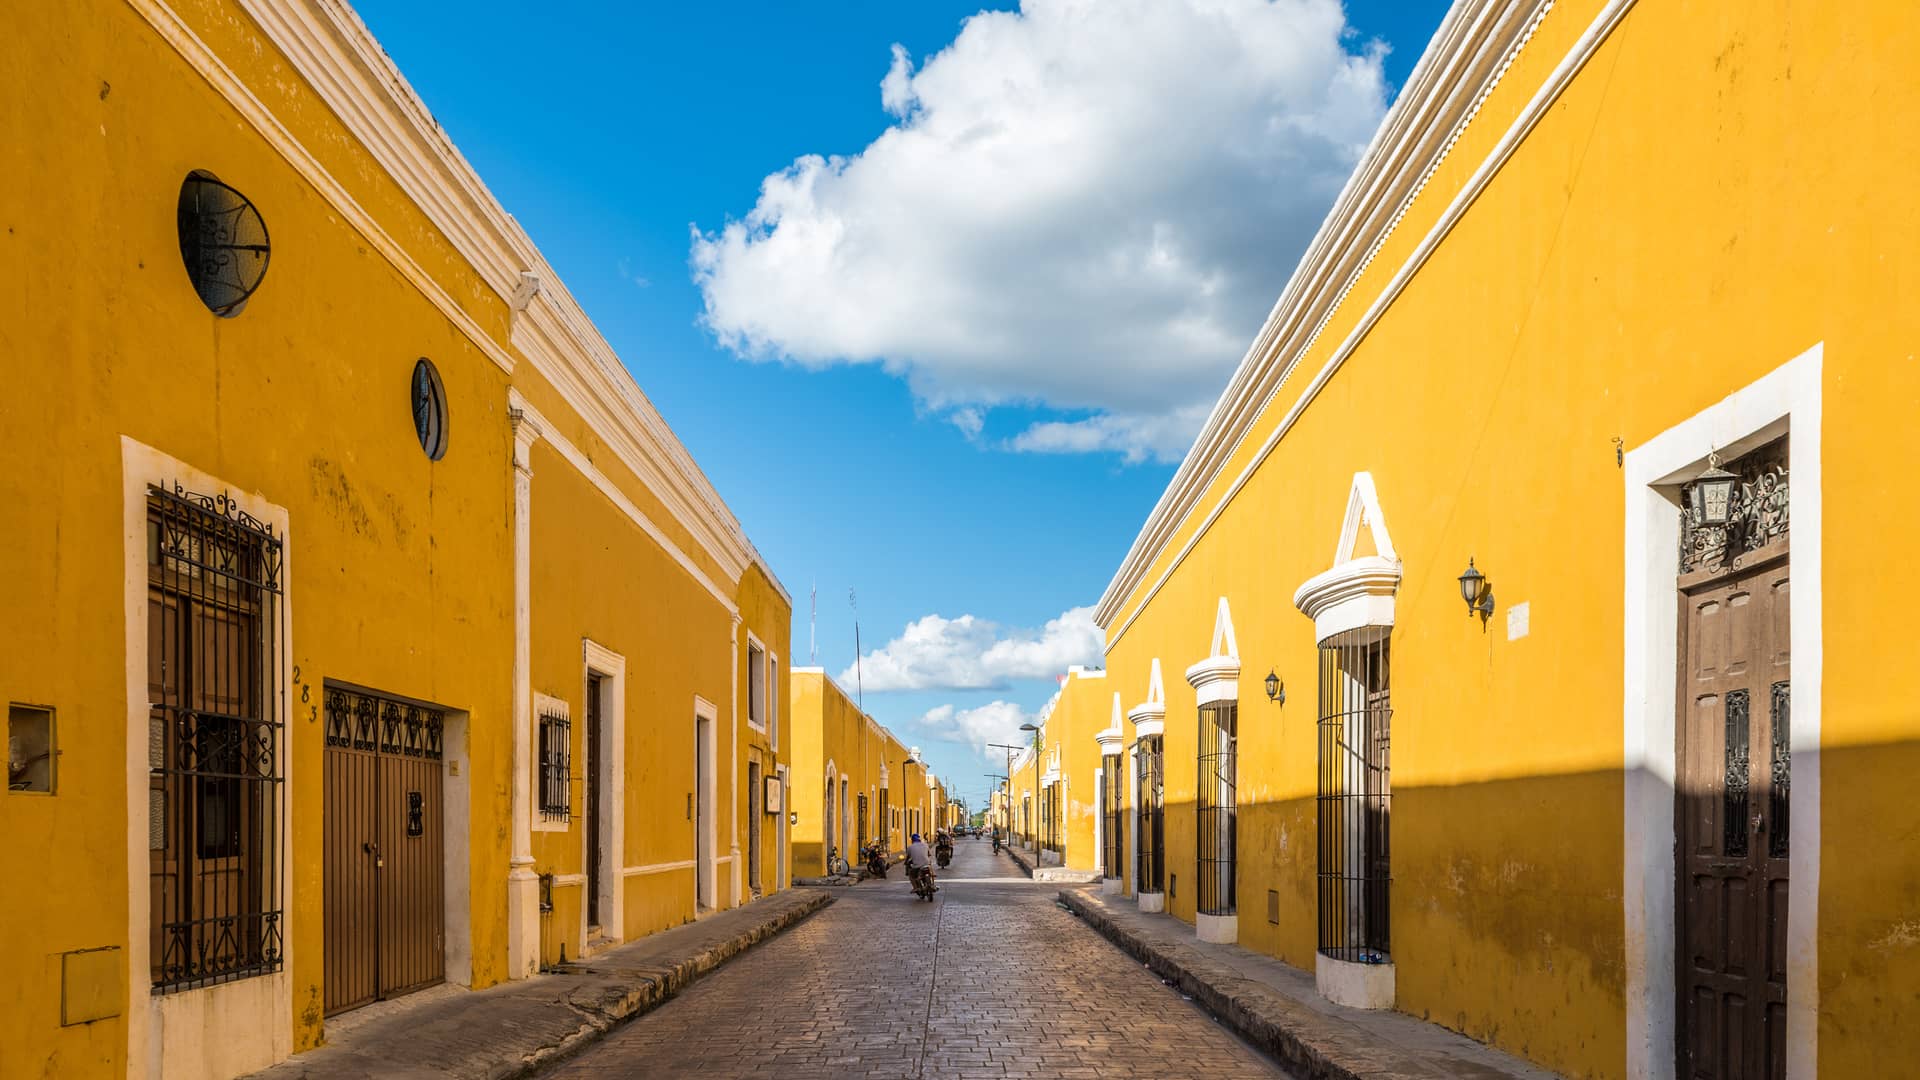 Calles de la ciudad de Puebla para representar las sucursales de sky en esa localidad